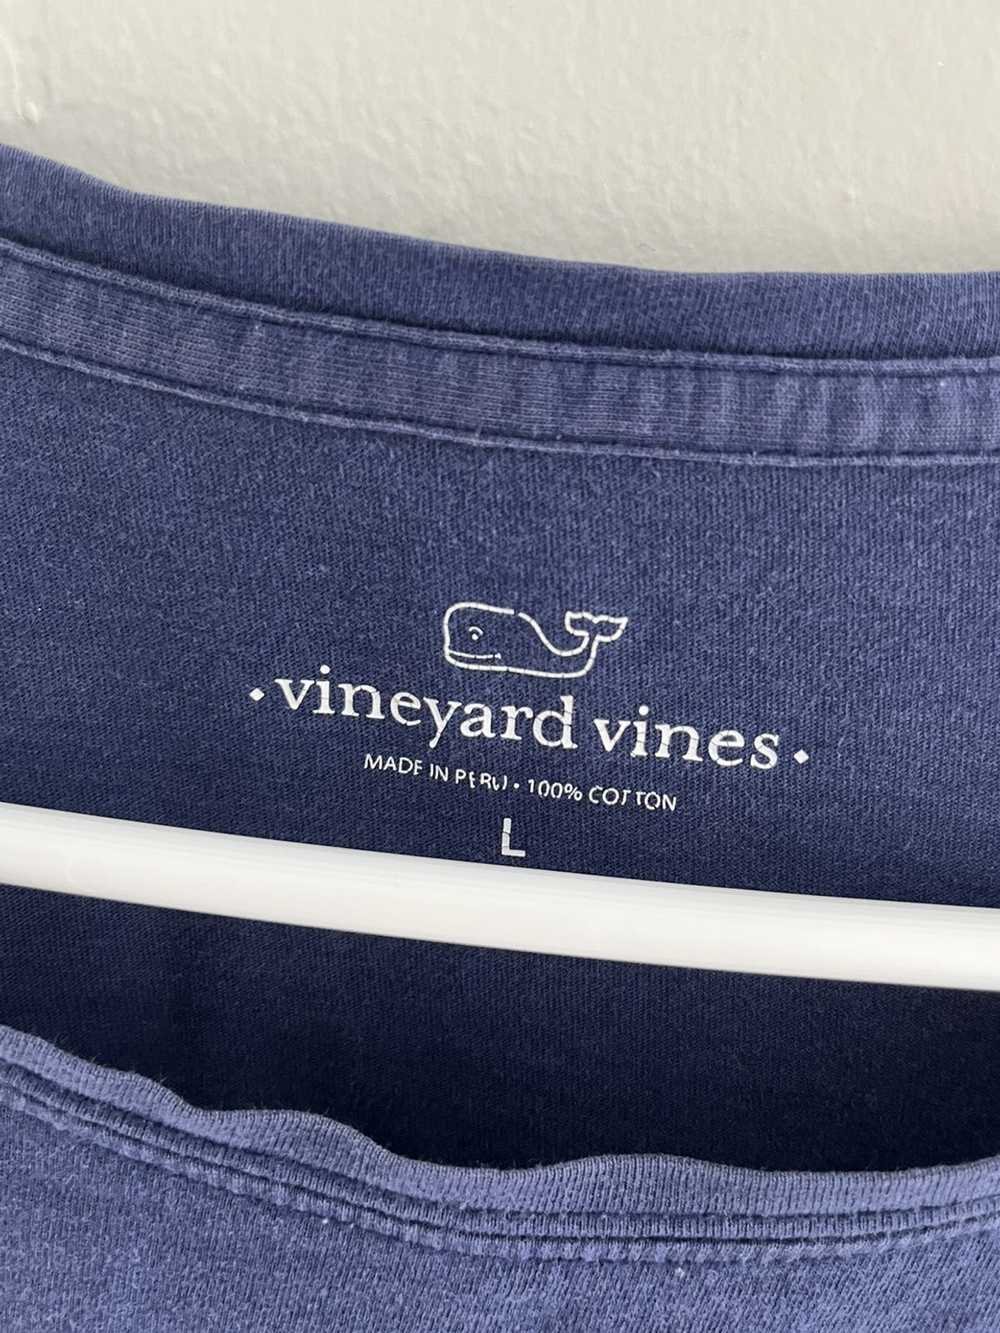 Vineyard Vines Vinyard Vines American Flag Logo T… - image 3